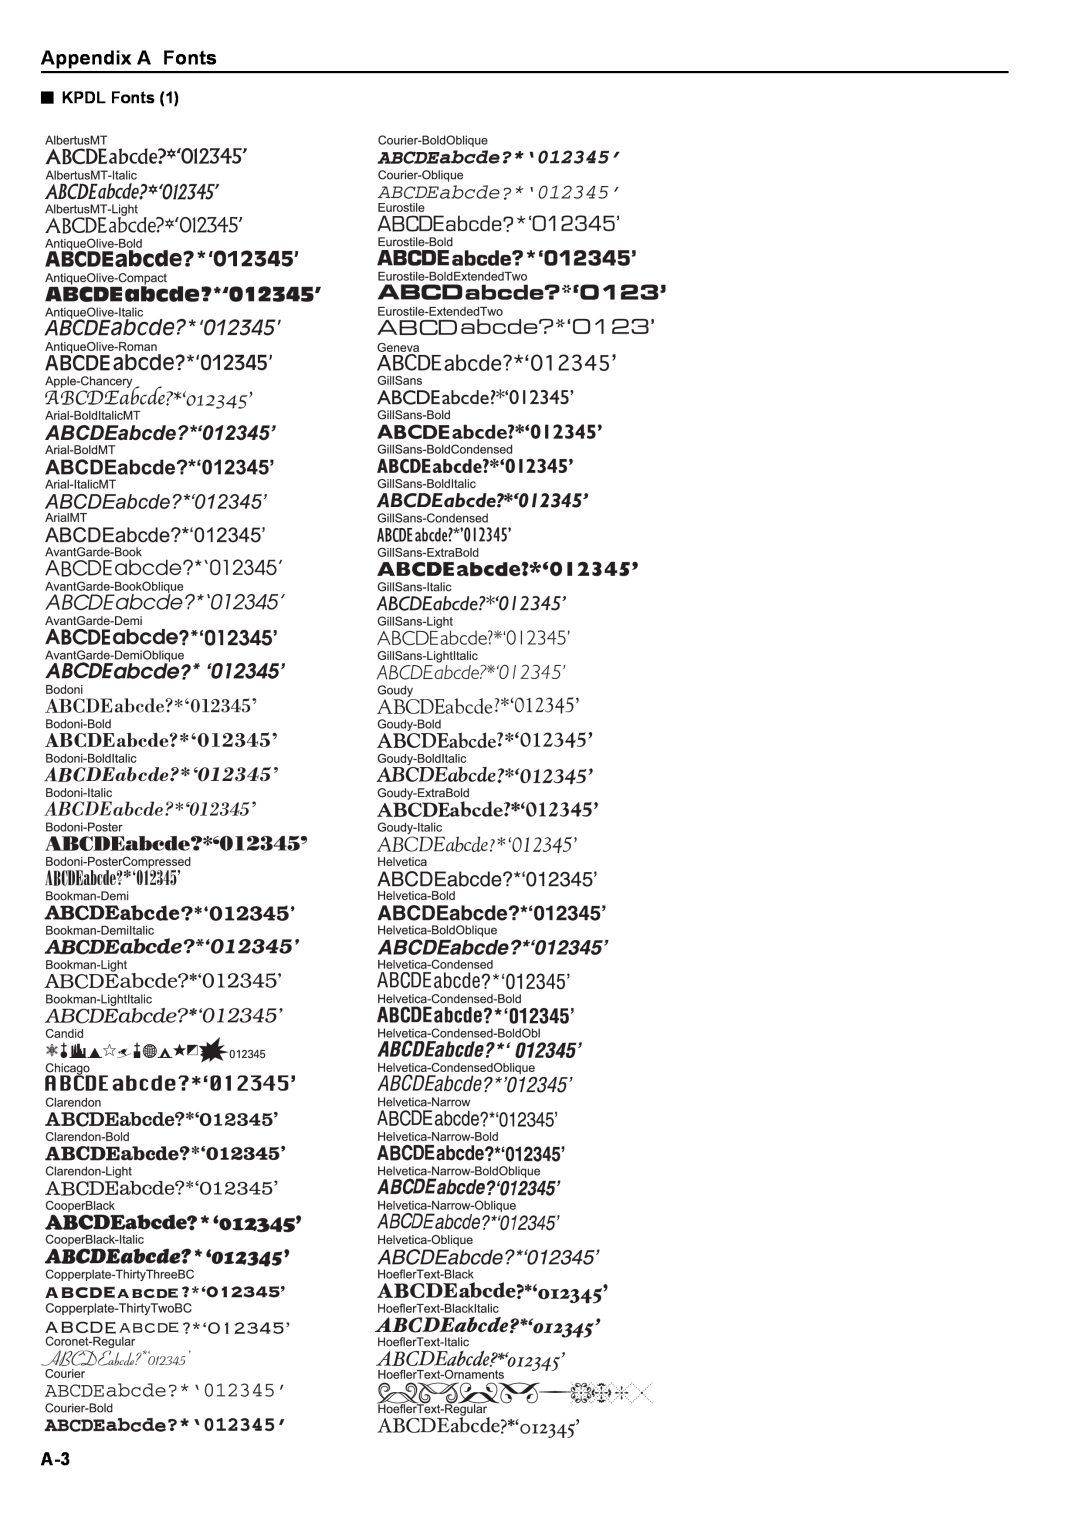 Kyocera S-9100DN manual Appendix A Fonts, 3KPDL Fonts 